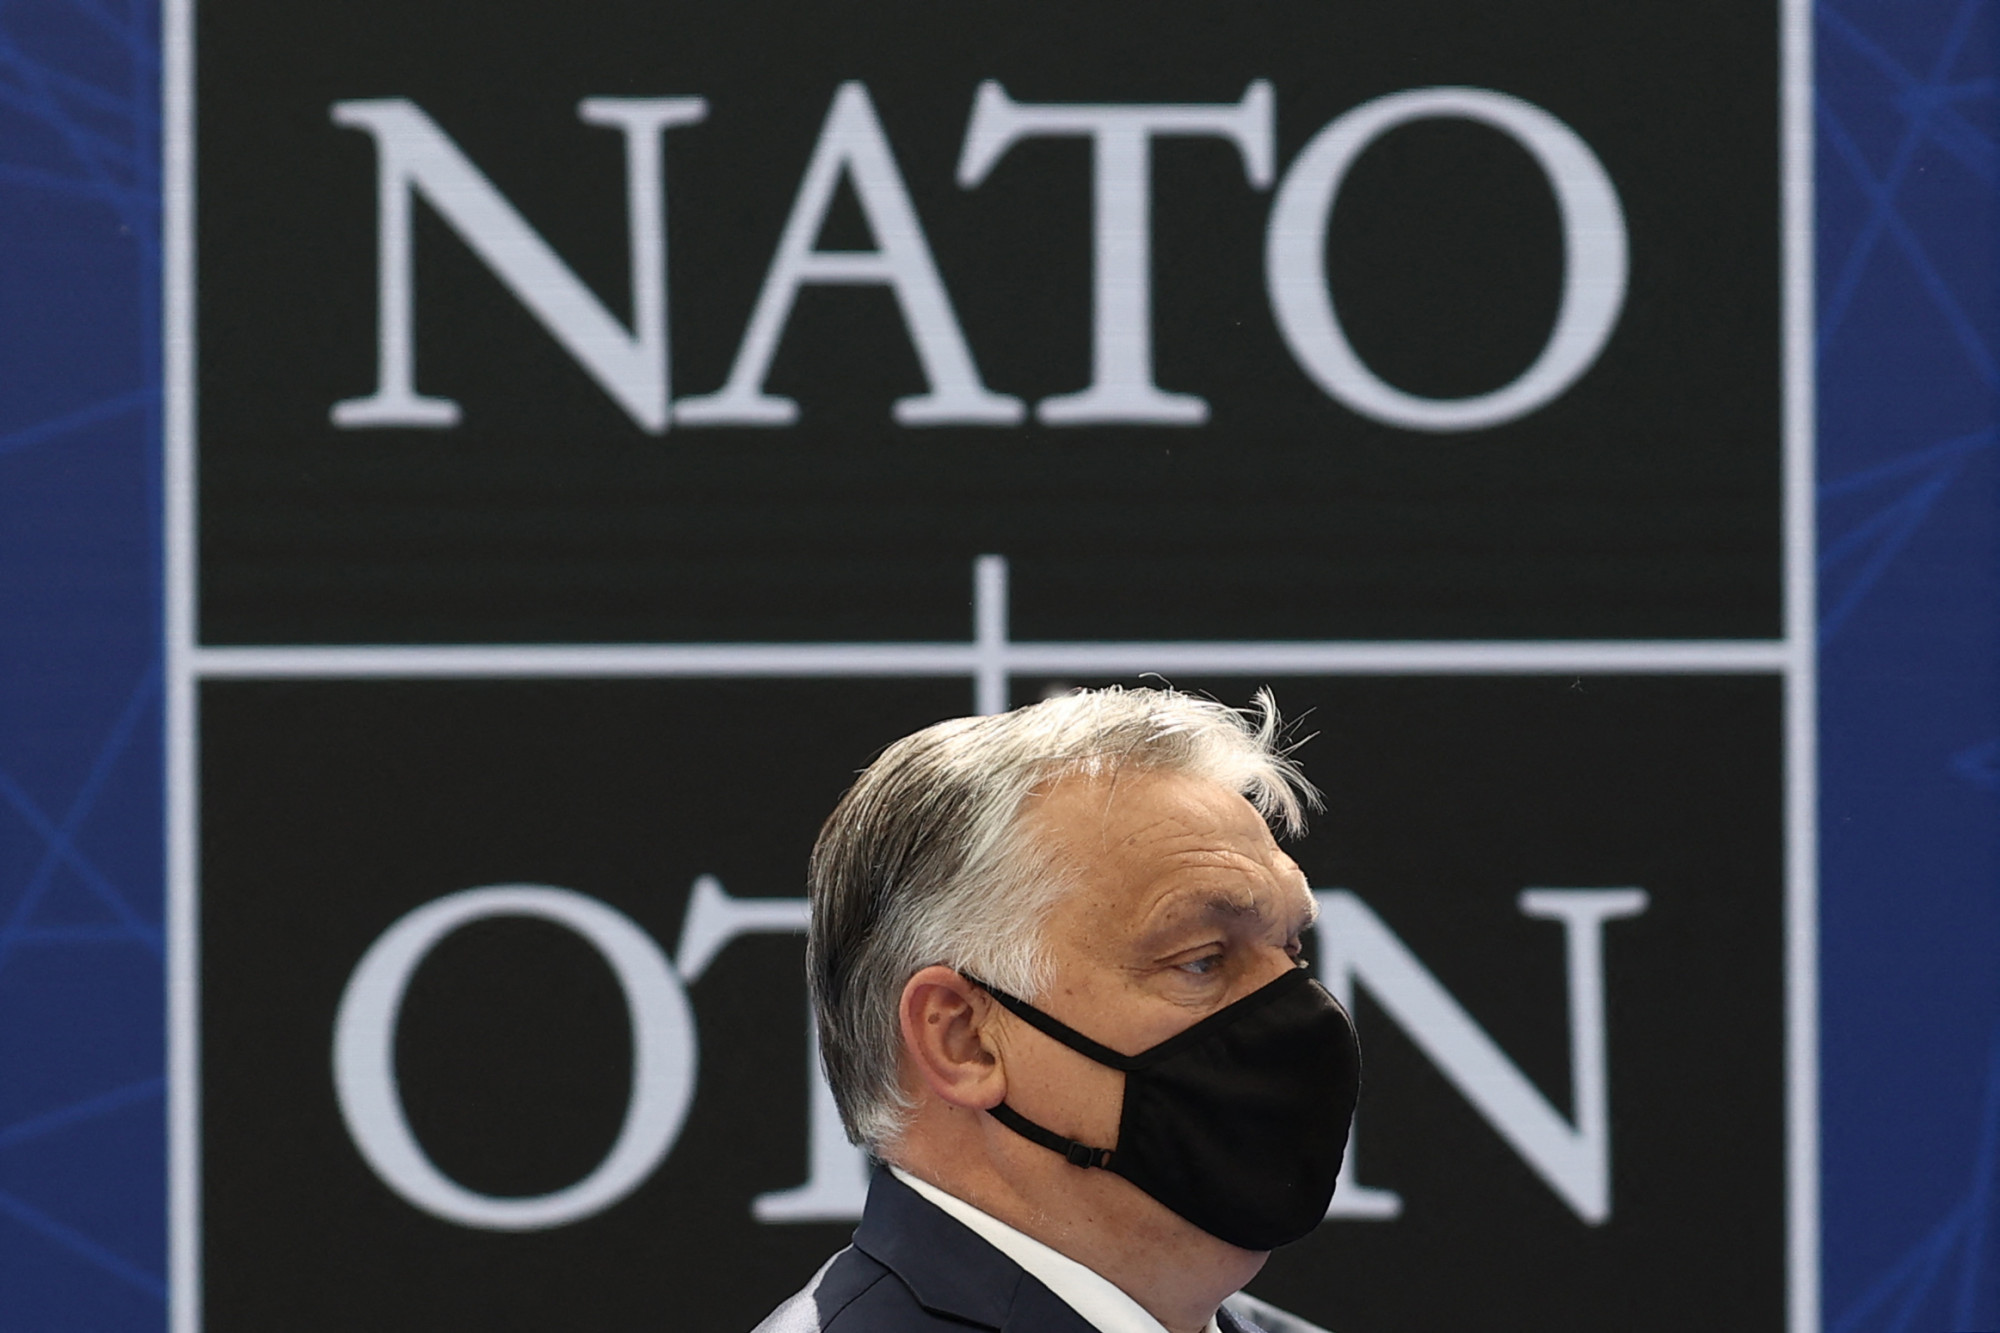 A NATO nem a biztonságunkat garantálja, hanem veszélyt jelent Magyarországra - írja a Magyar Nemzet